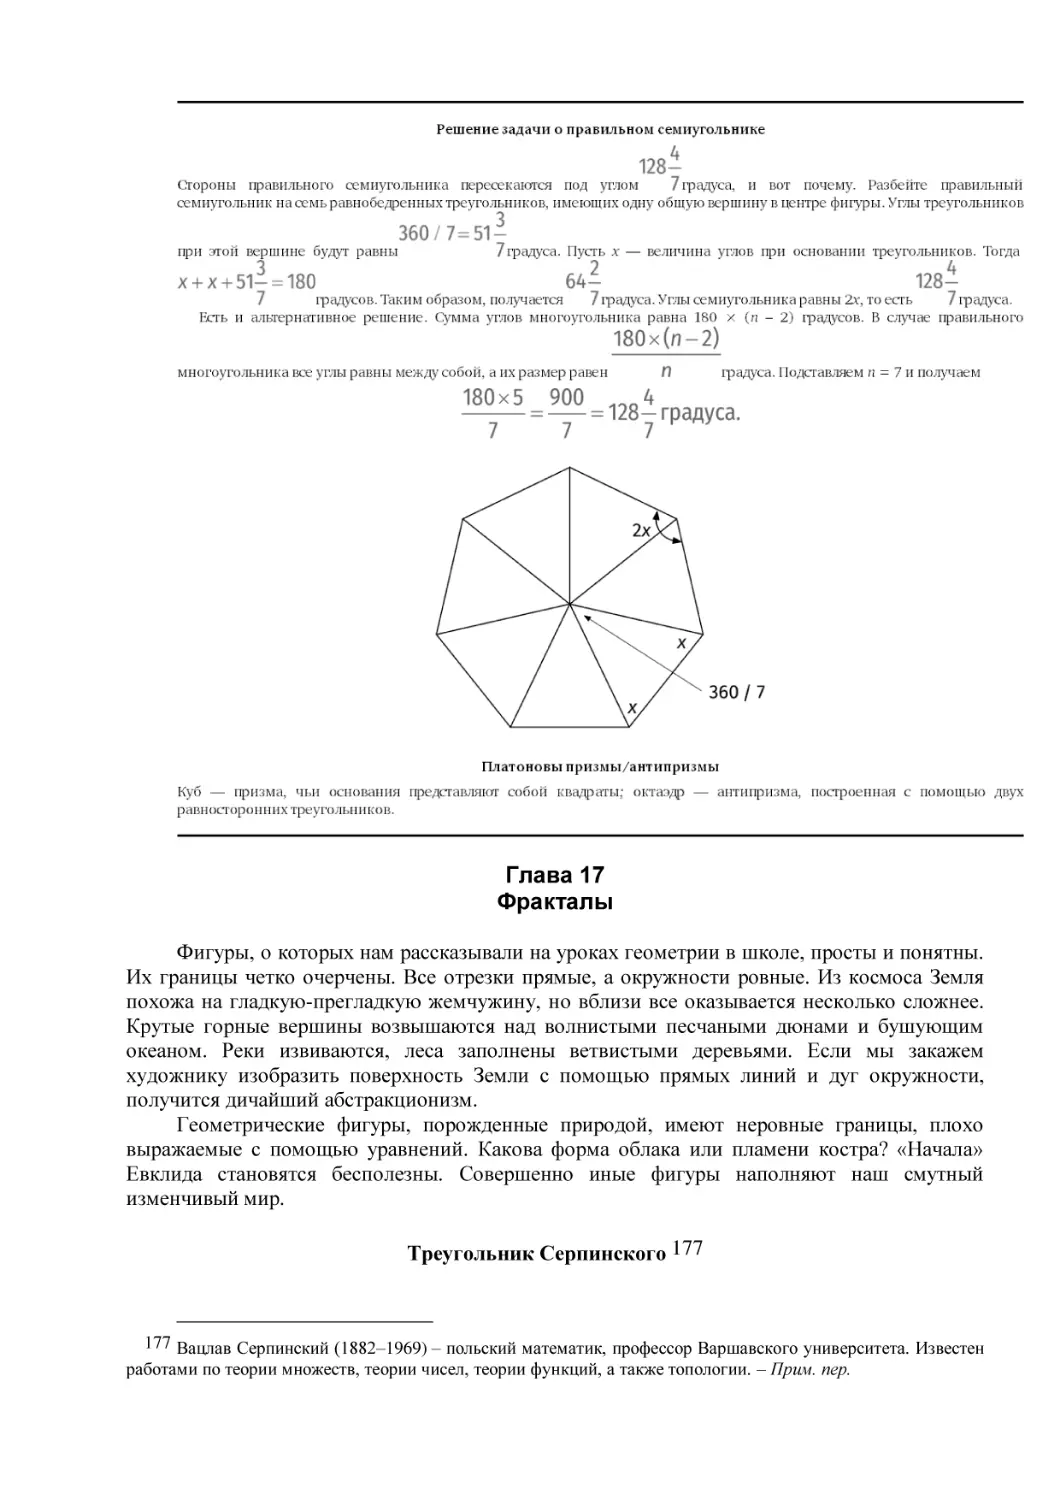 Глава 17
Фракталы
Треугольник Серпинского